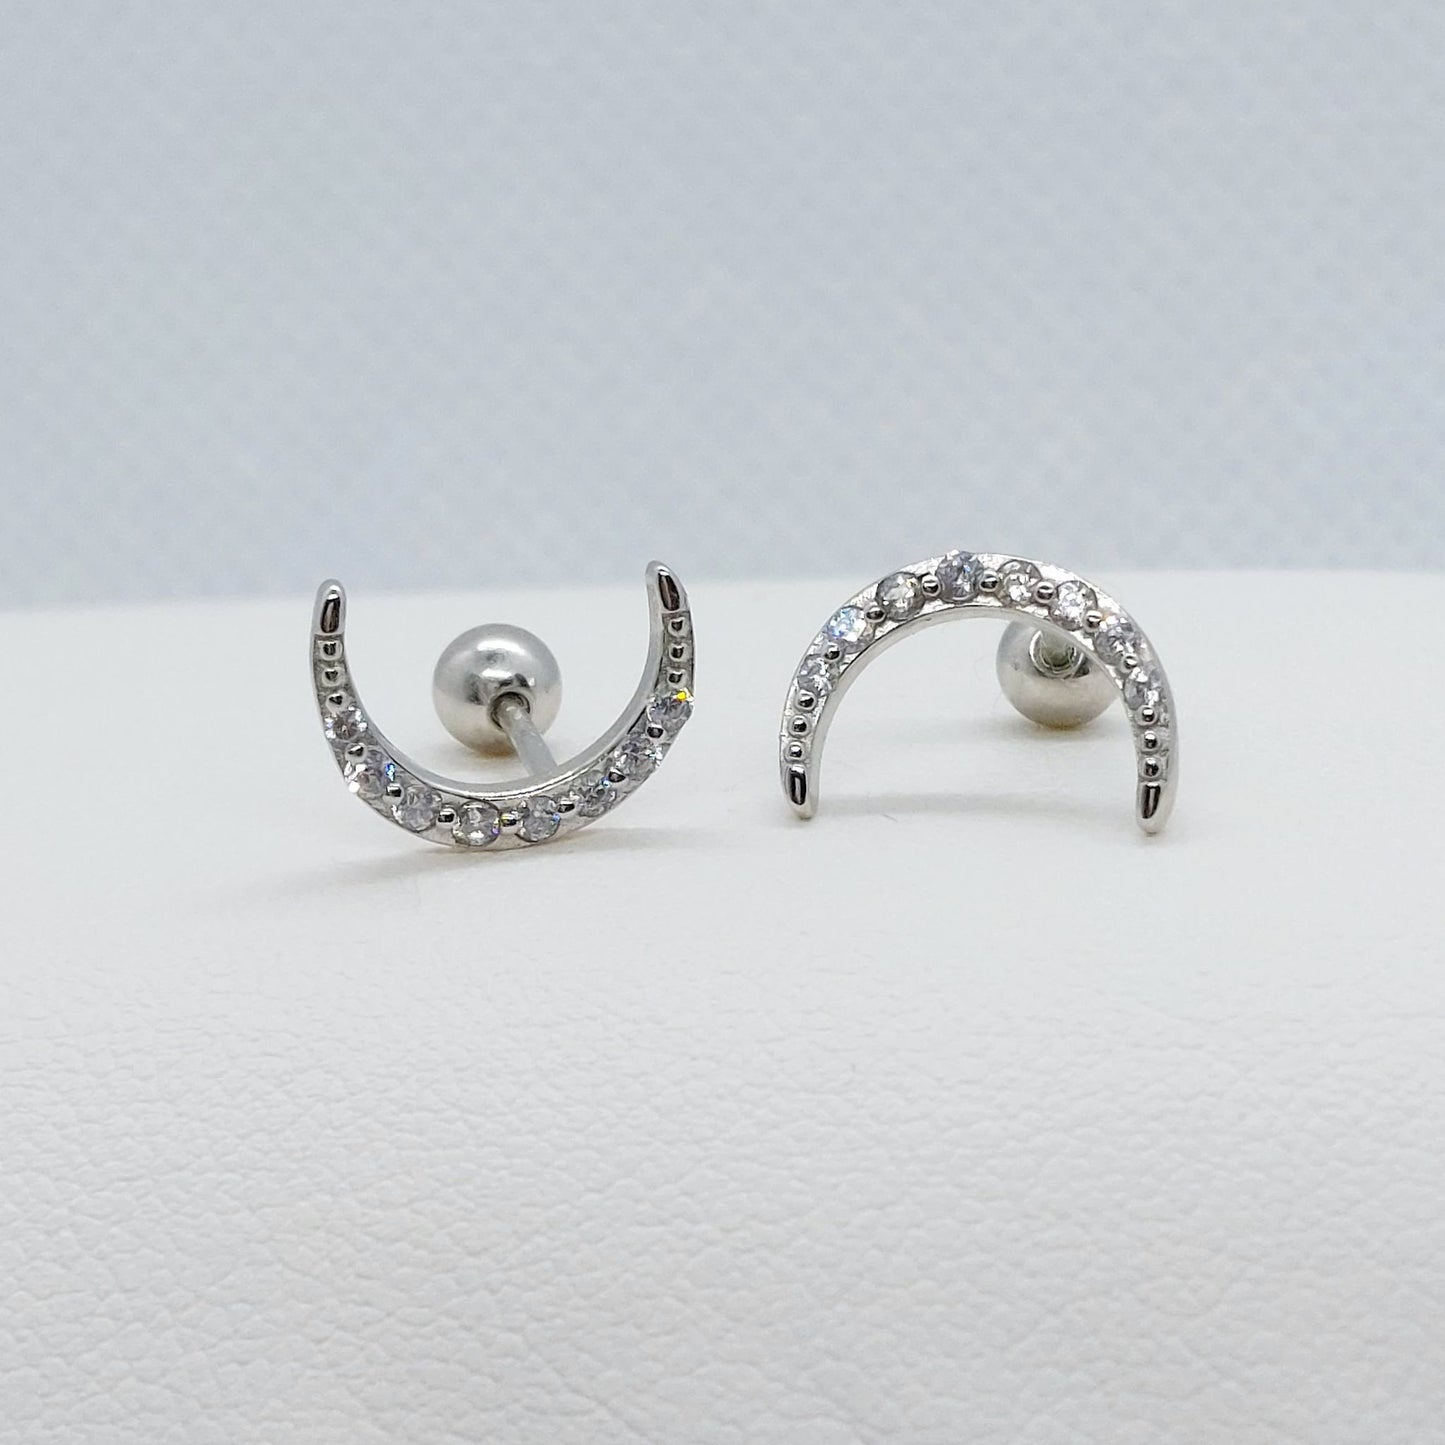 Half Moon with Zircon Stud Earrings - Sterling Silver